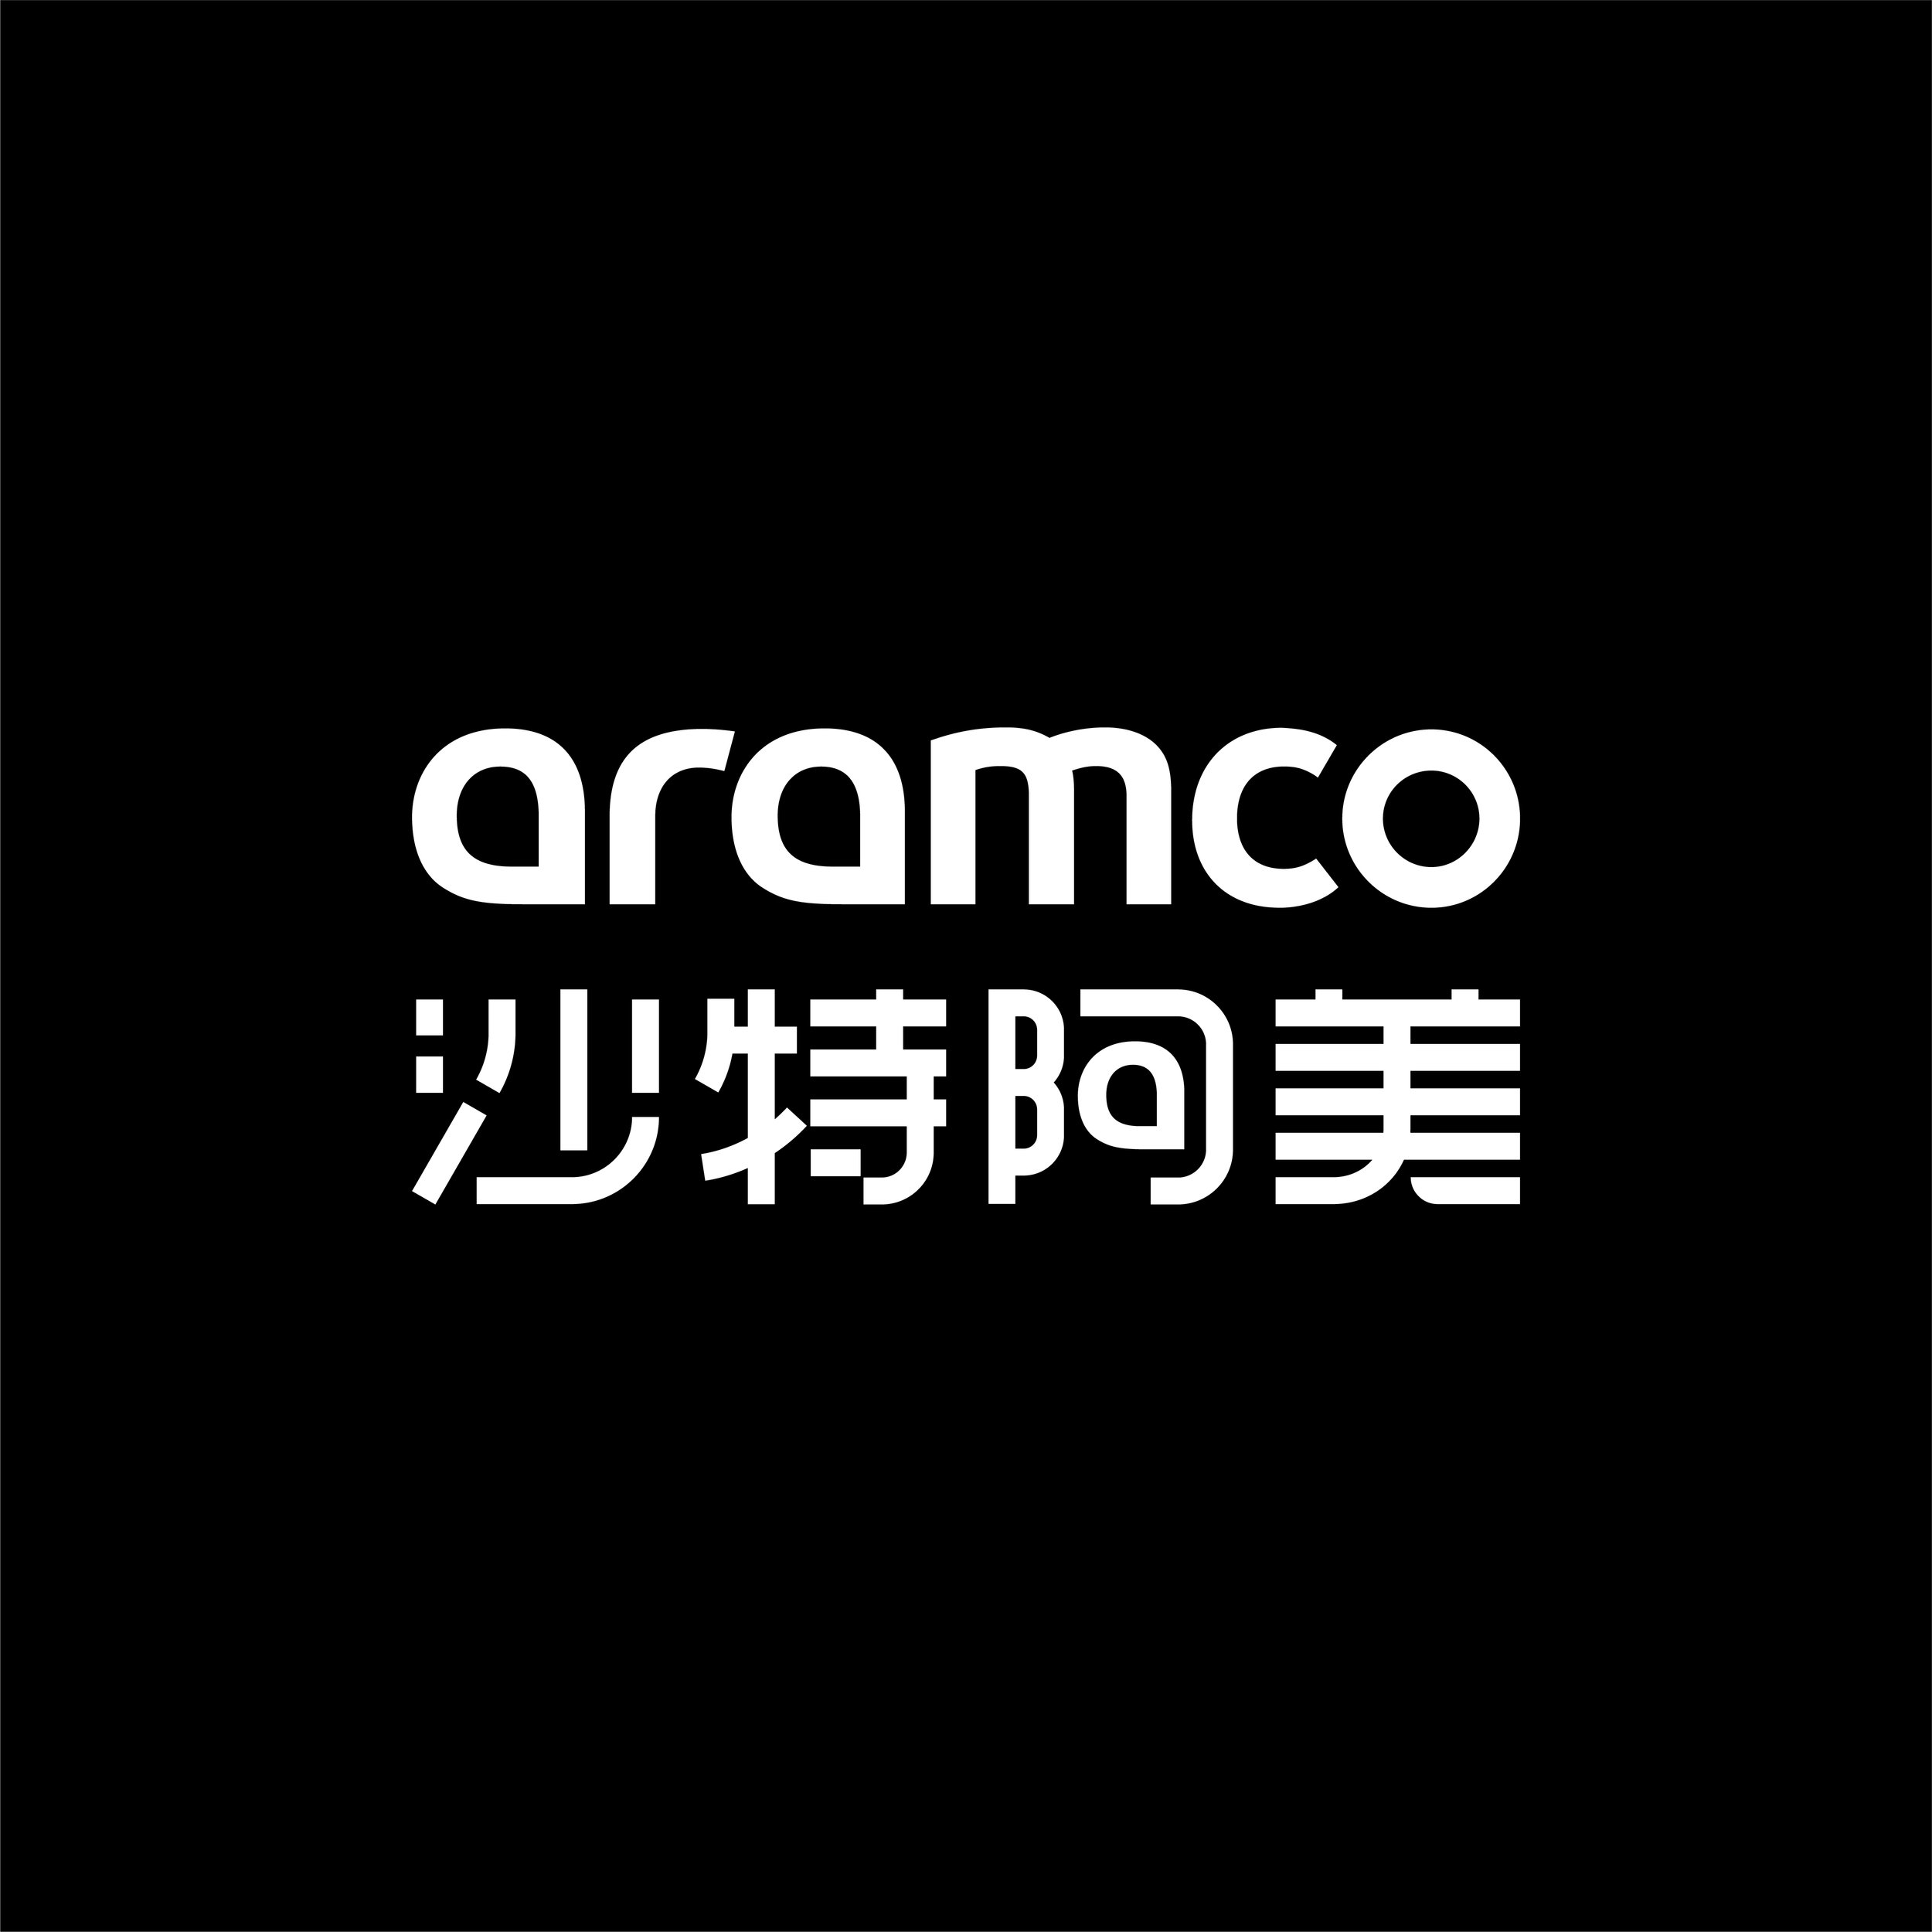 Logos_aramco.jpg